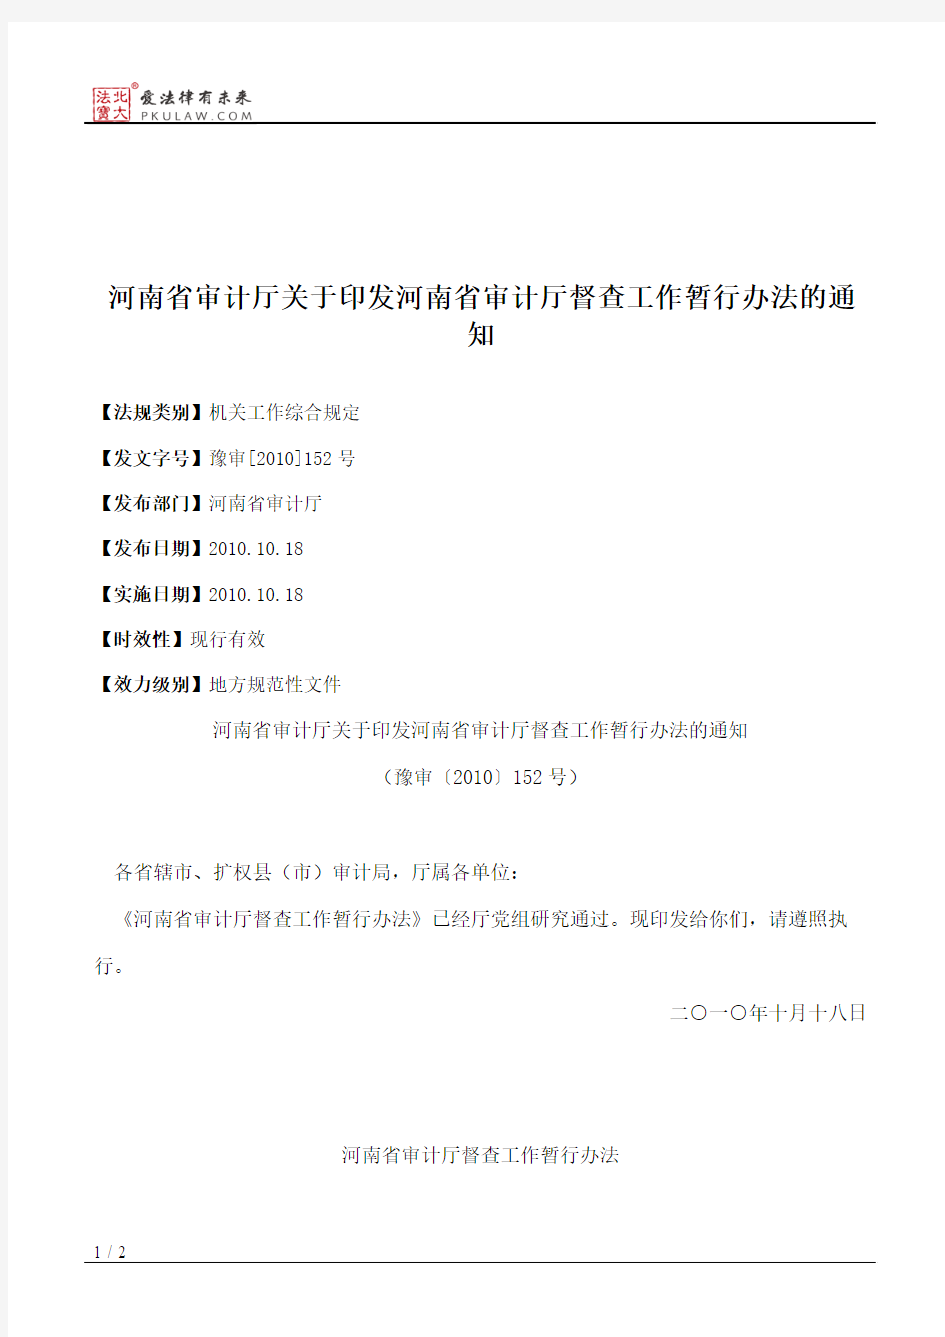 河南省审计厅关于印发河南省审计厅督查工作暂行办法的通知